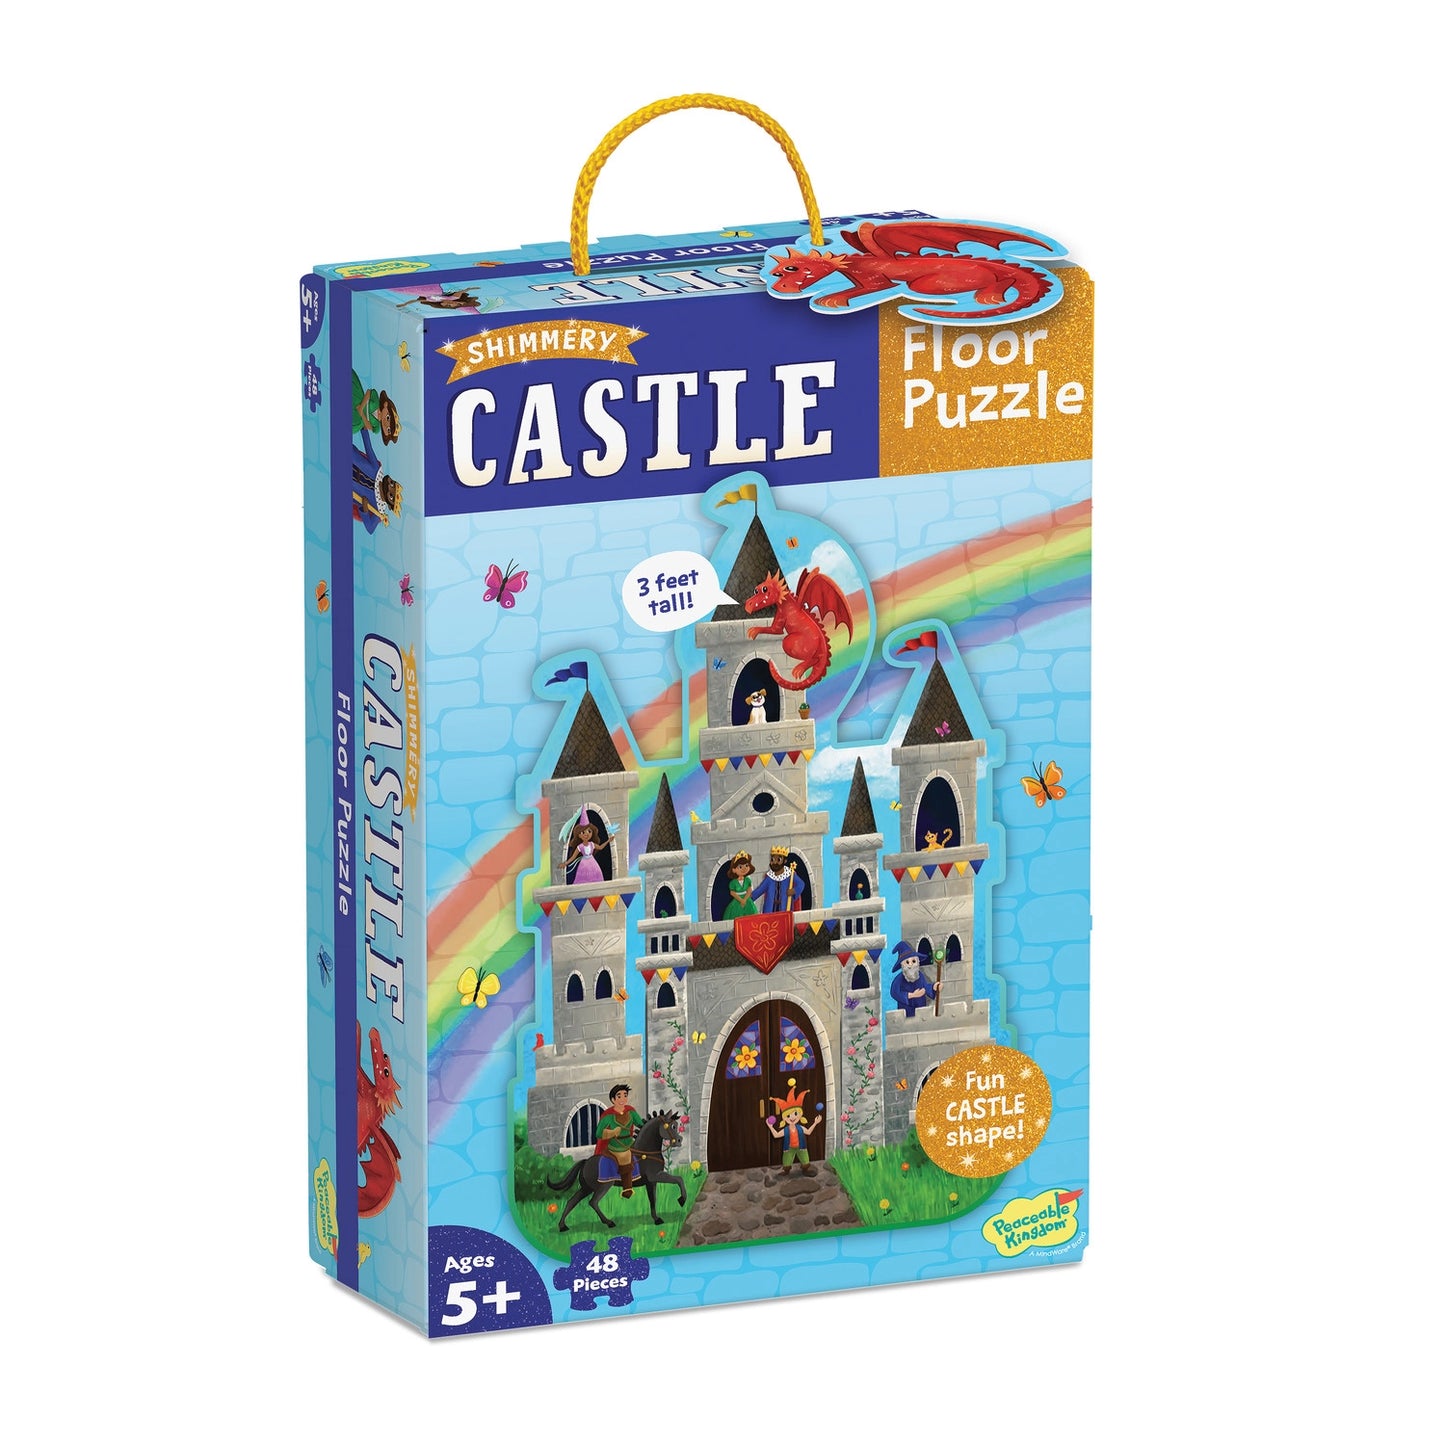 Shimmery Castle Floor Puzzle 48pcs